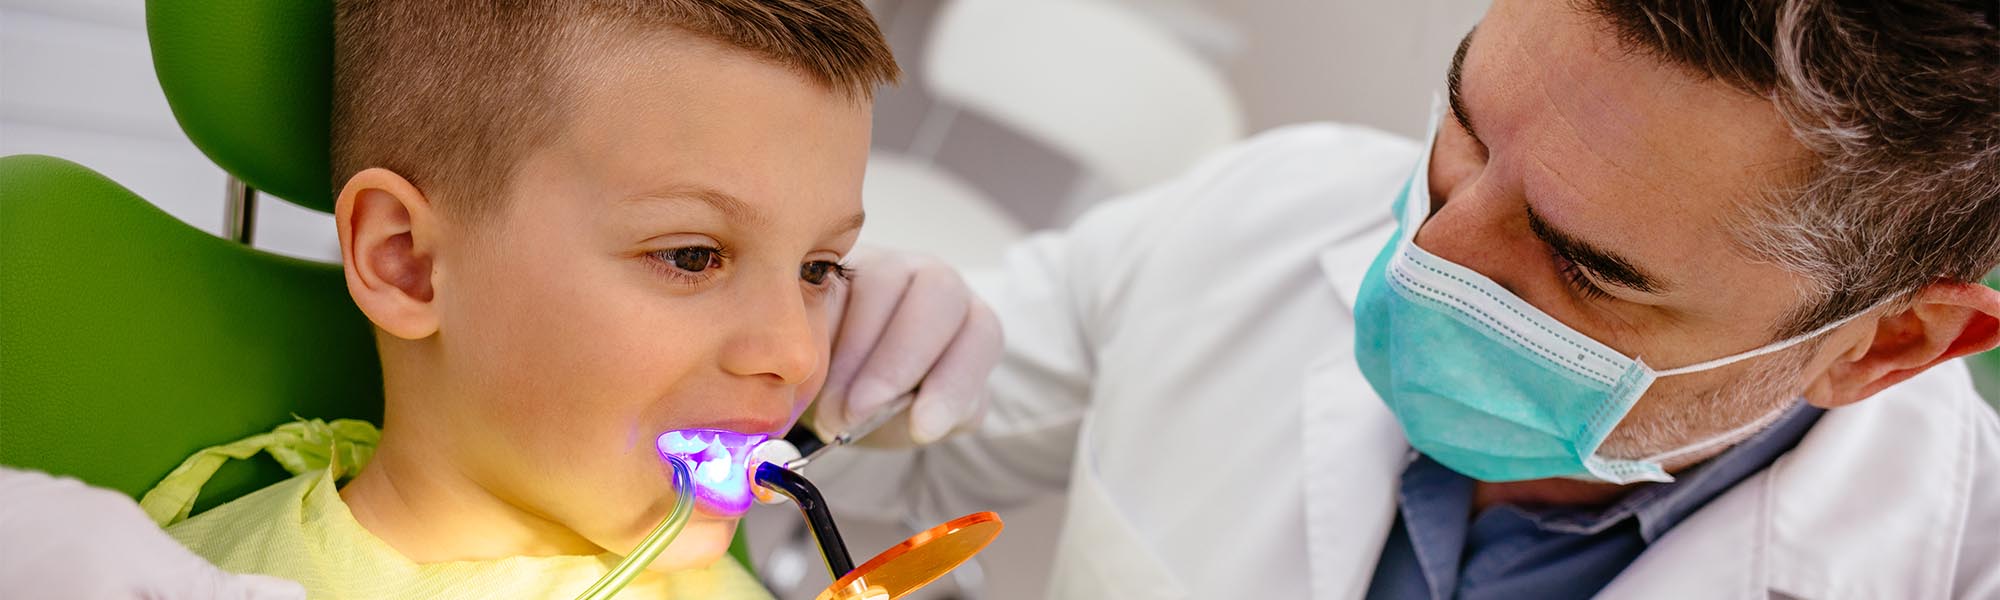 Pediatric Dentist Treatments in Cerritos CA